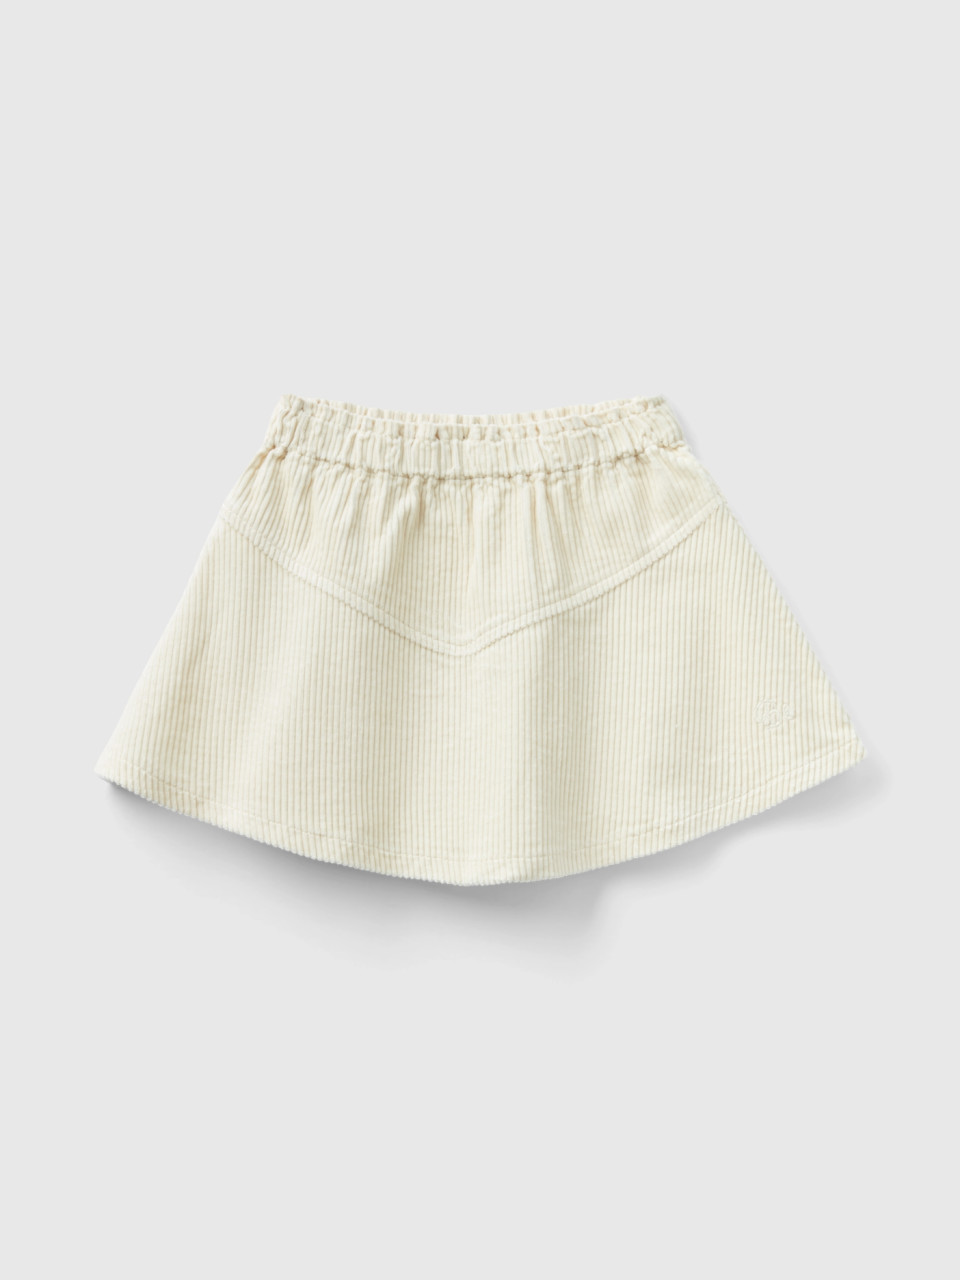 Benetton, Corduroy Mini Skirt, Beige, Kids